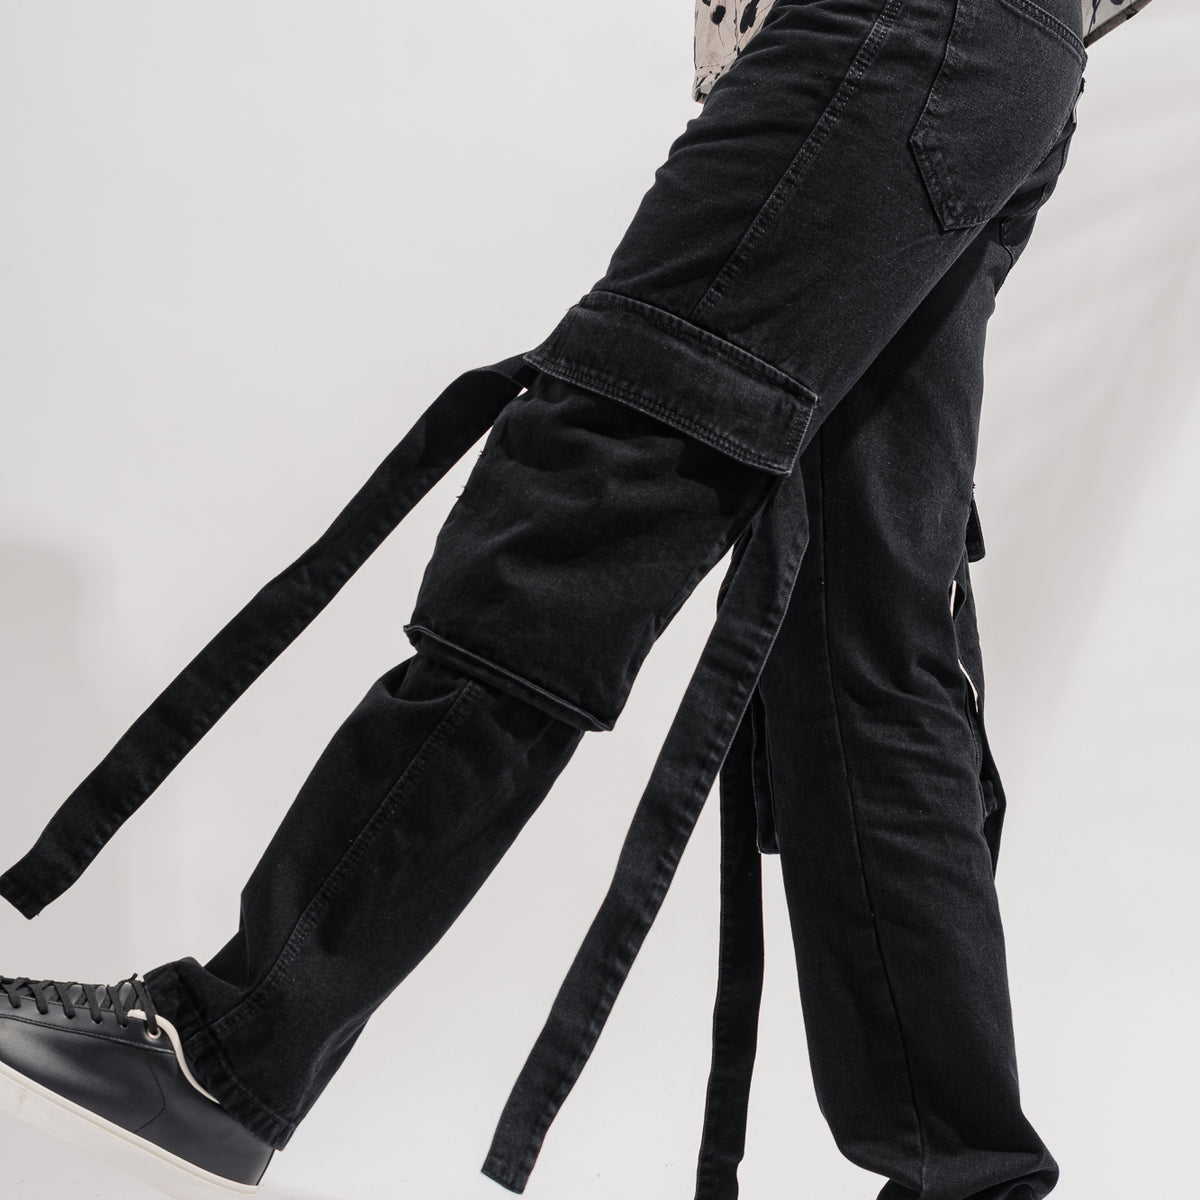 Kultprit hanging belts with knee print jeans | KULTPRIT